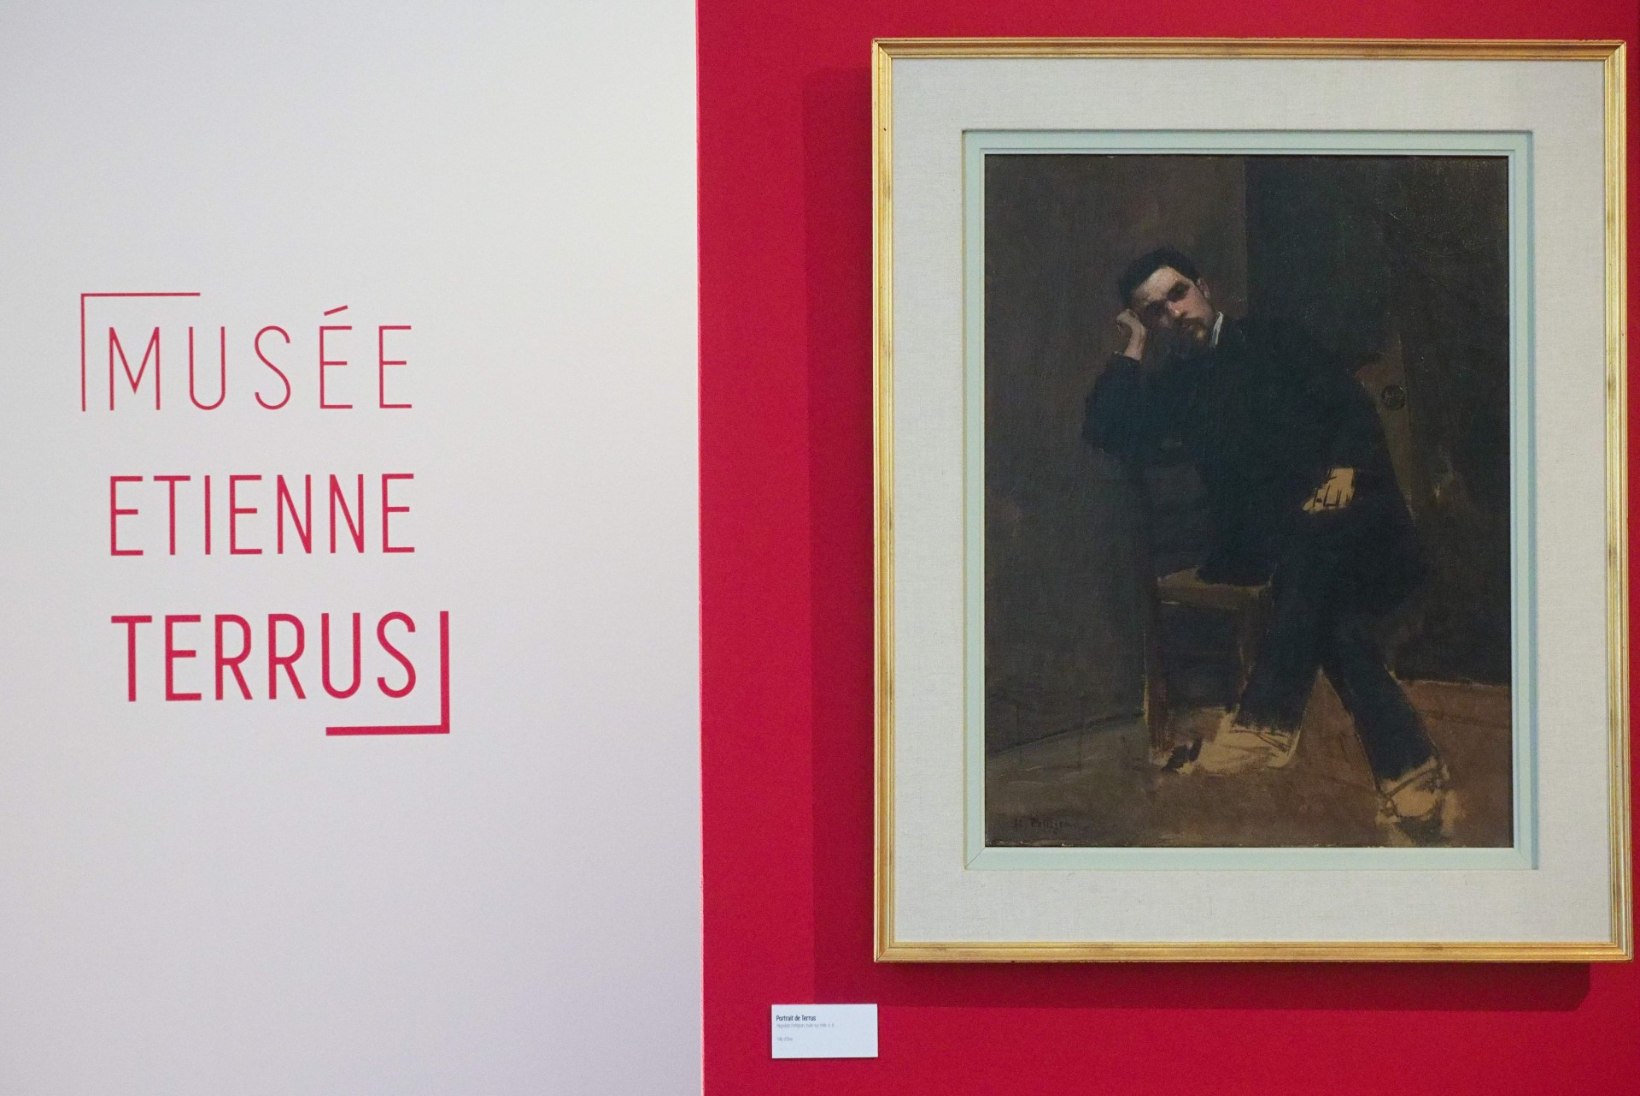 Prantsuse kunstimuuseum avastas, et üle poole nende kunstikogust on võltsing